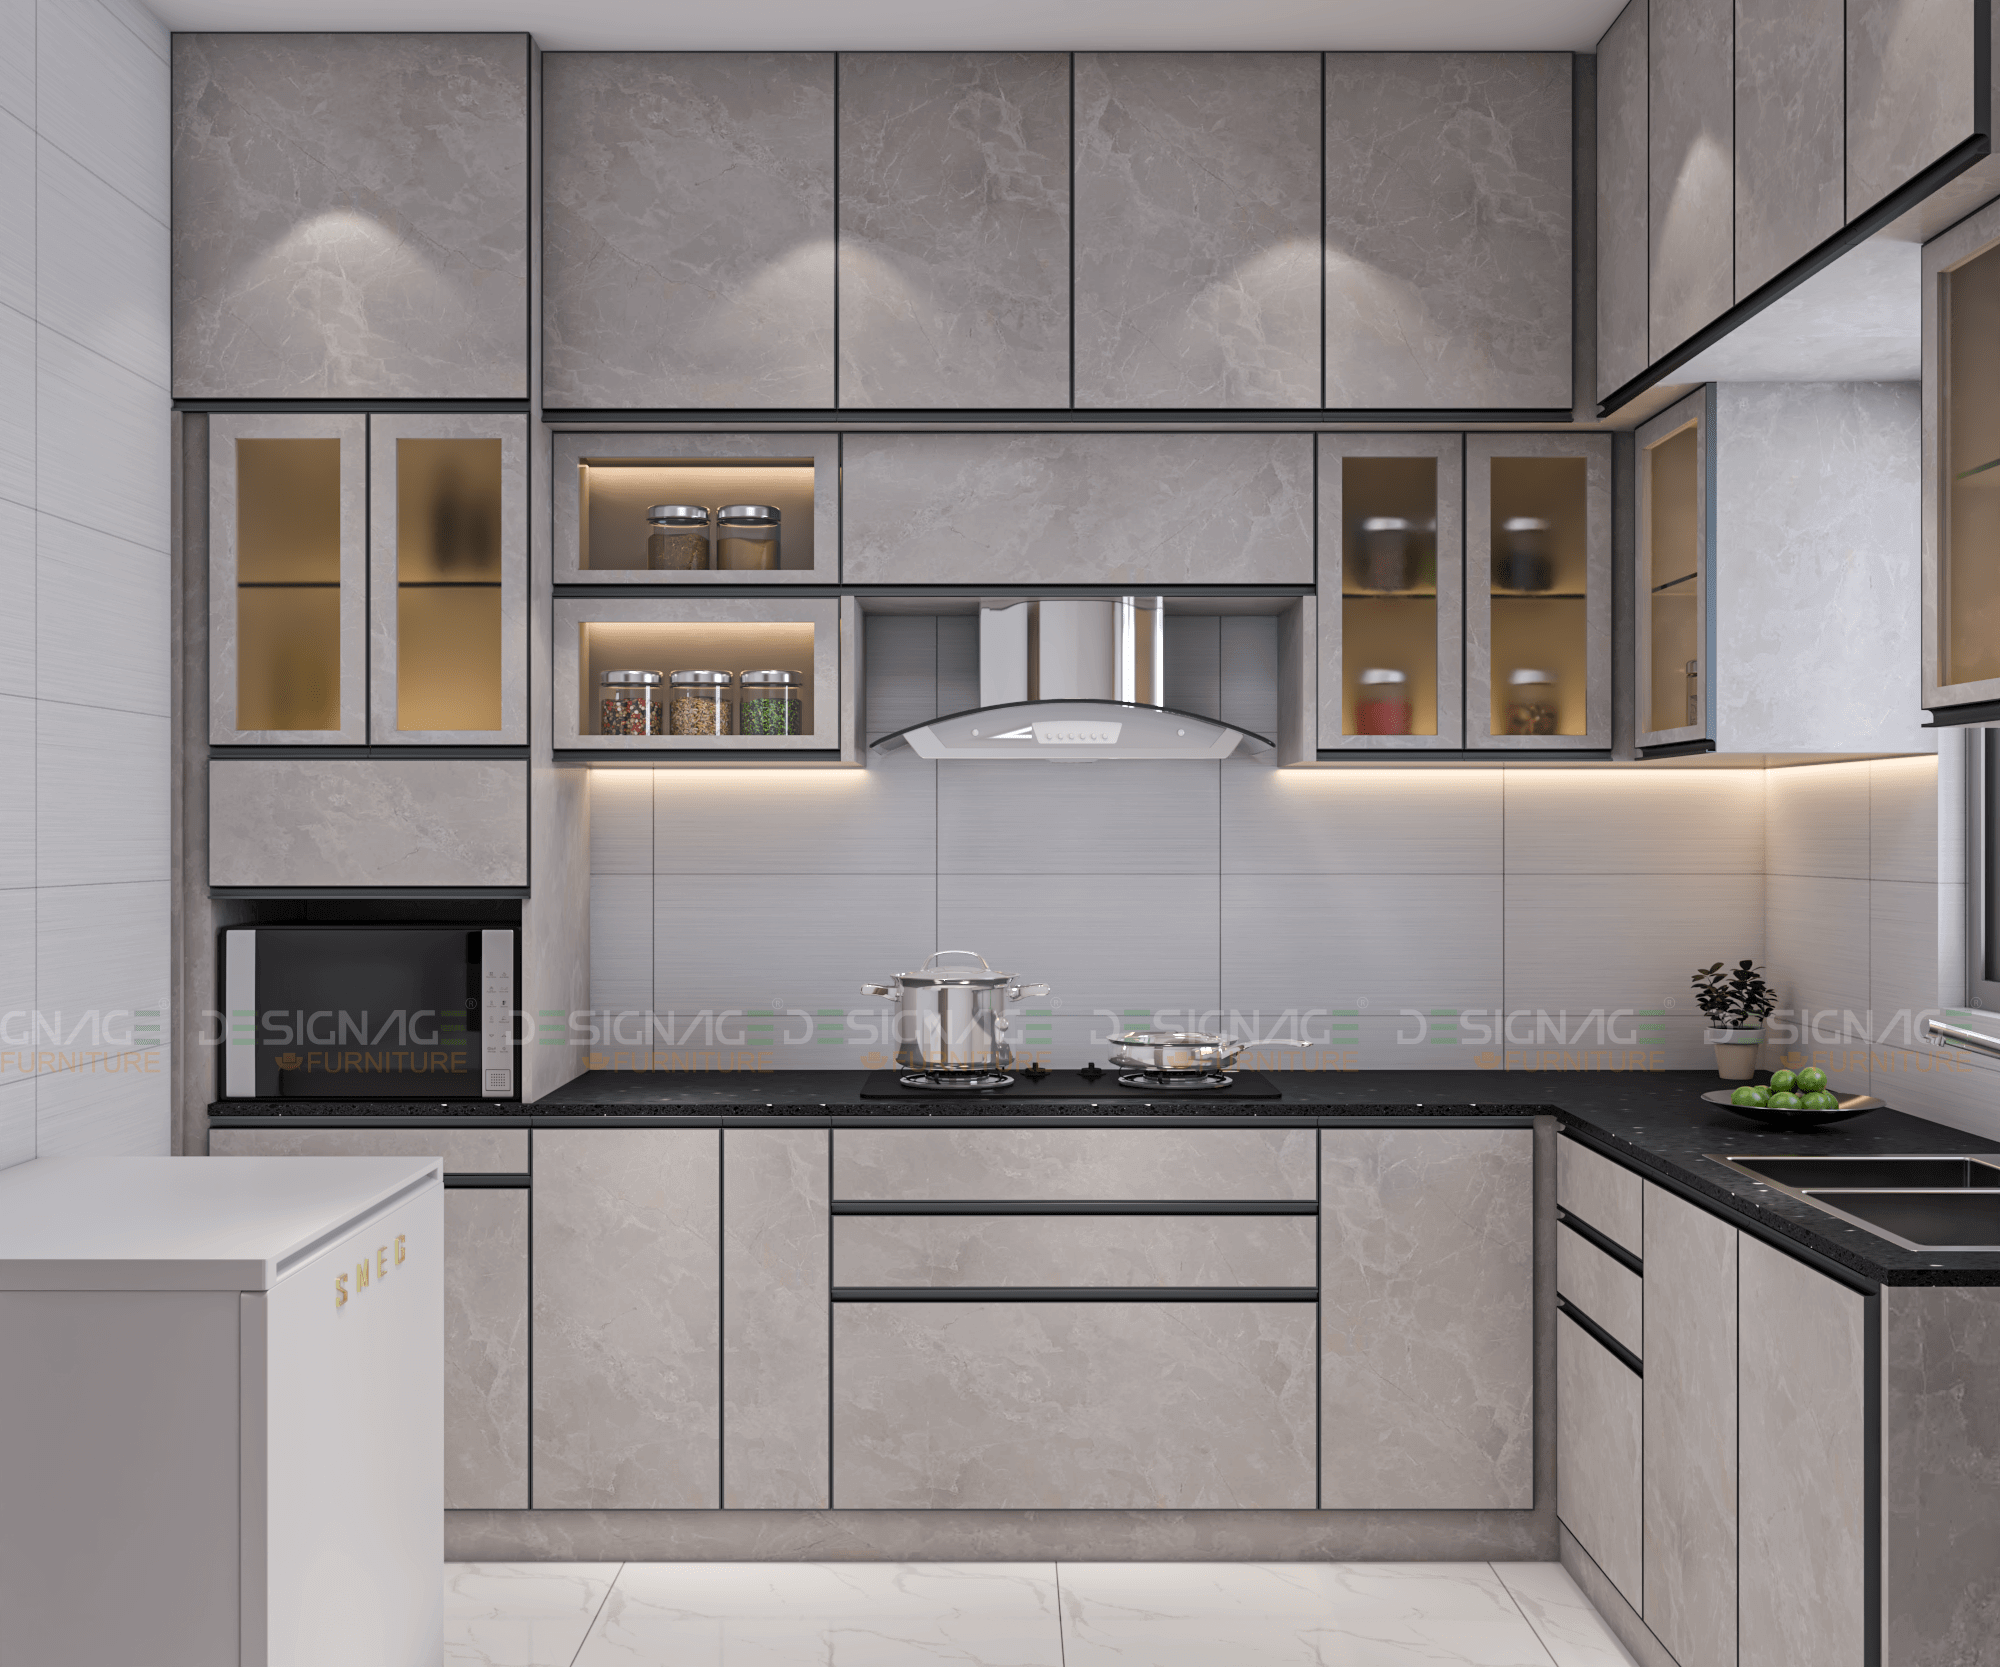 Interior Kitchen Cabinet Designs Designage